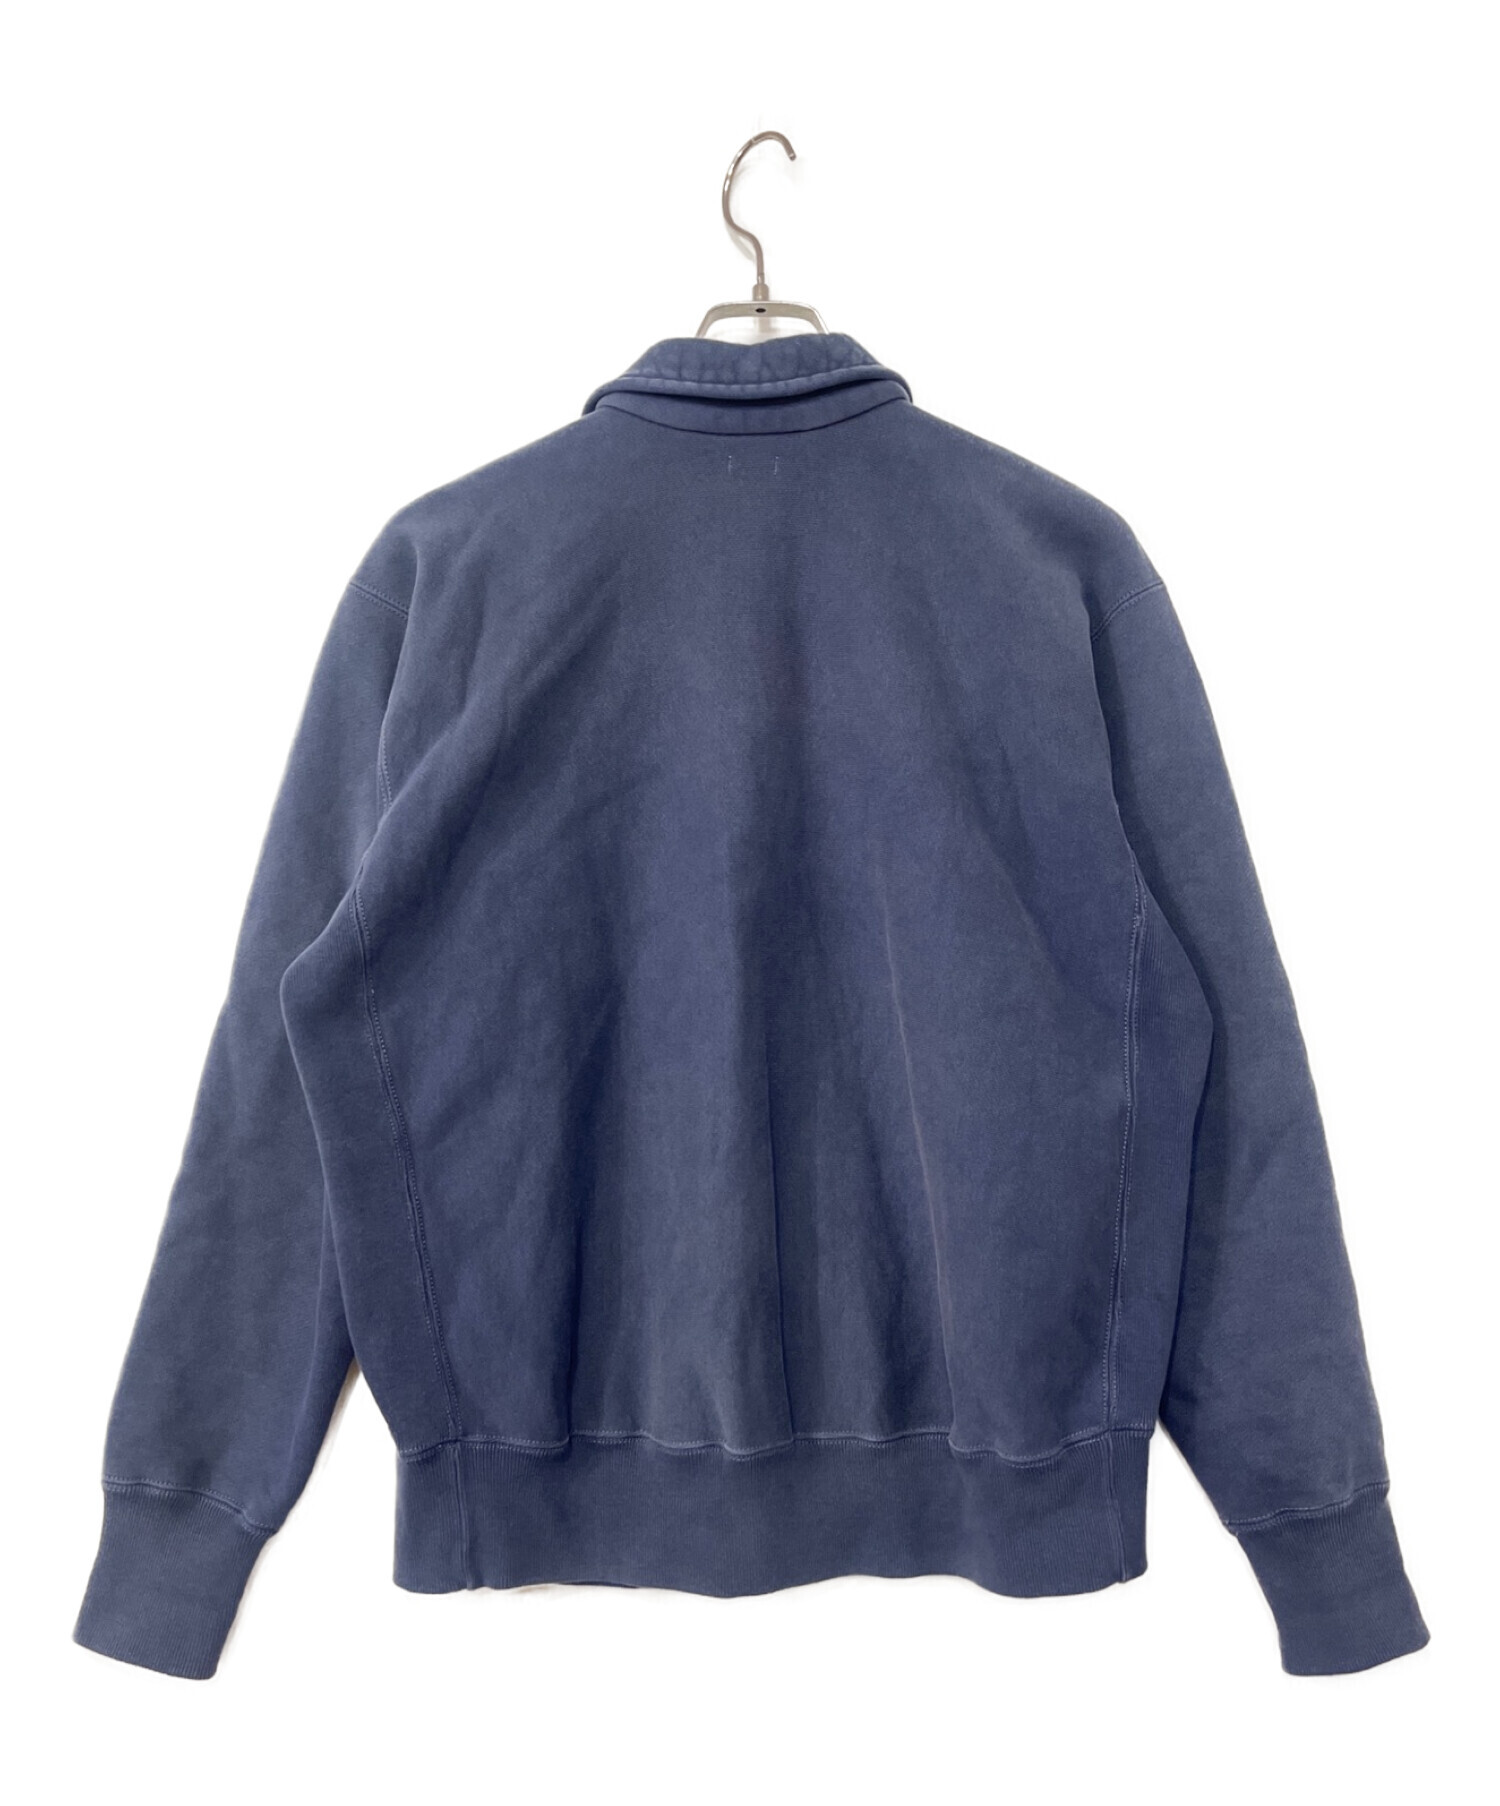 A.PRESSE (アプレッセ) Vintage Half Zip Sweatshirt ネイビー サイズ:2